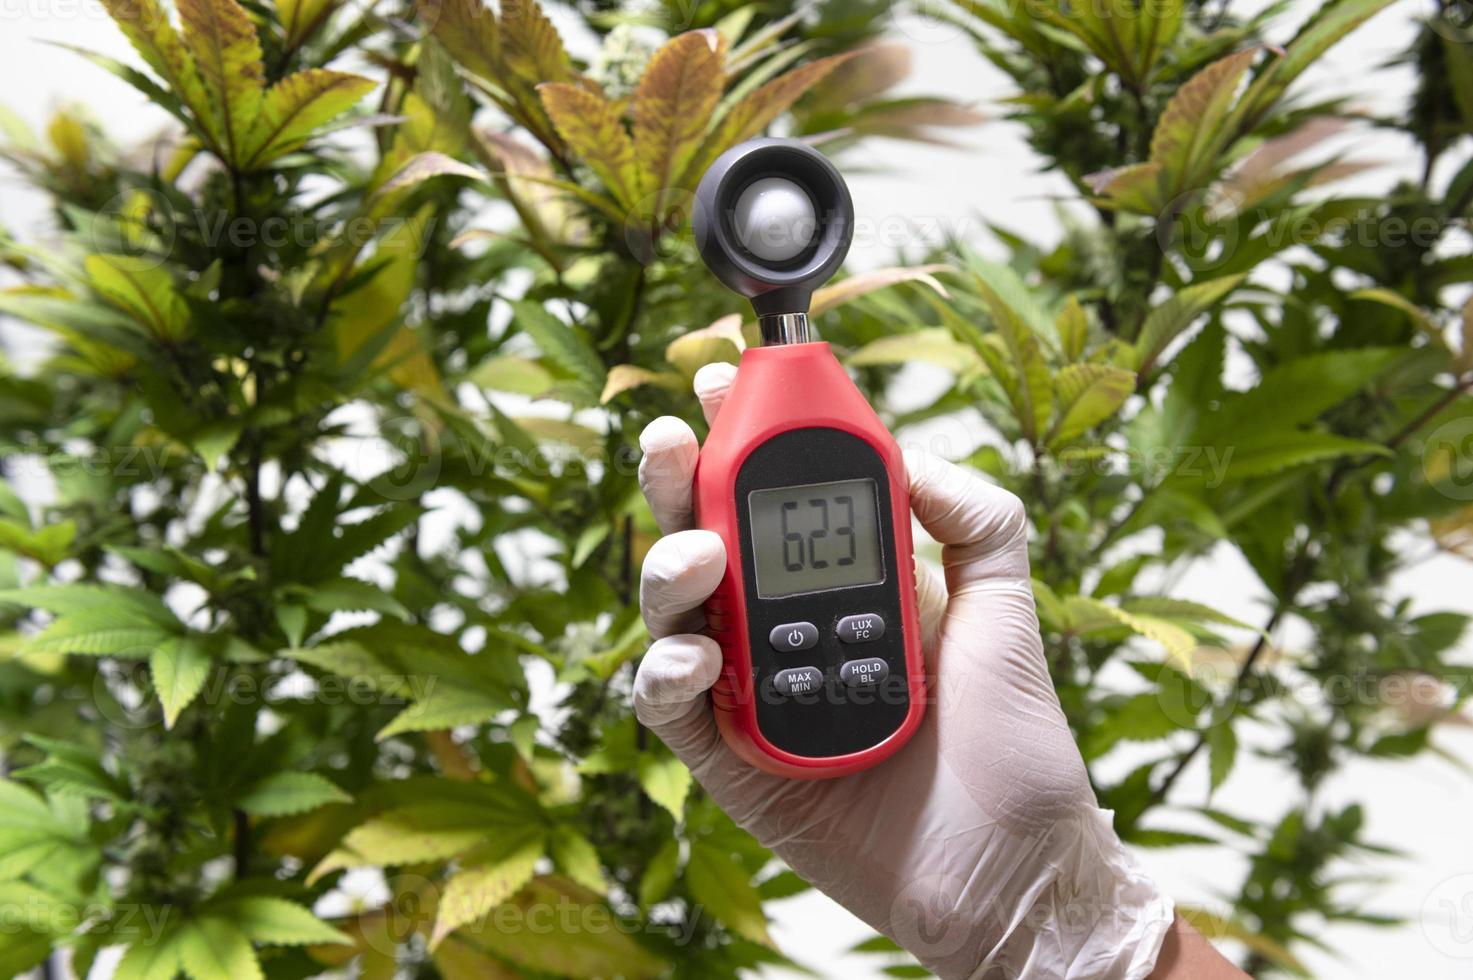 professionnel de la santé utilise un thermomètre et un hygromètre pour afficher la température et l'humidité à côté de la plante de cannabis. l'indicateur d'humidité s'affiche sur l'hygromètre de l'appareil. photo